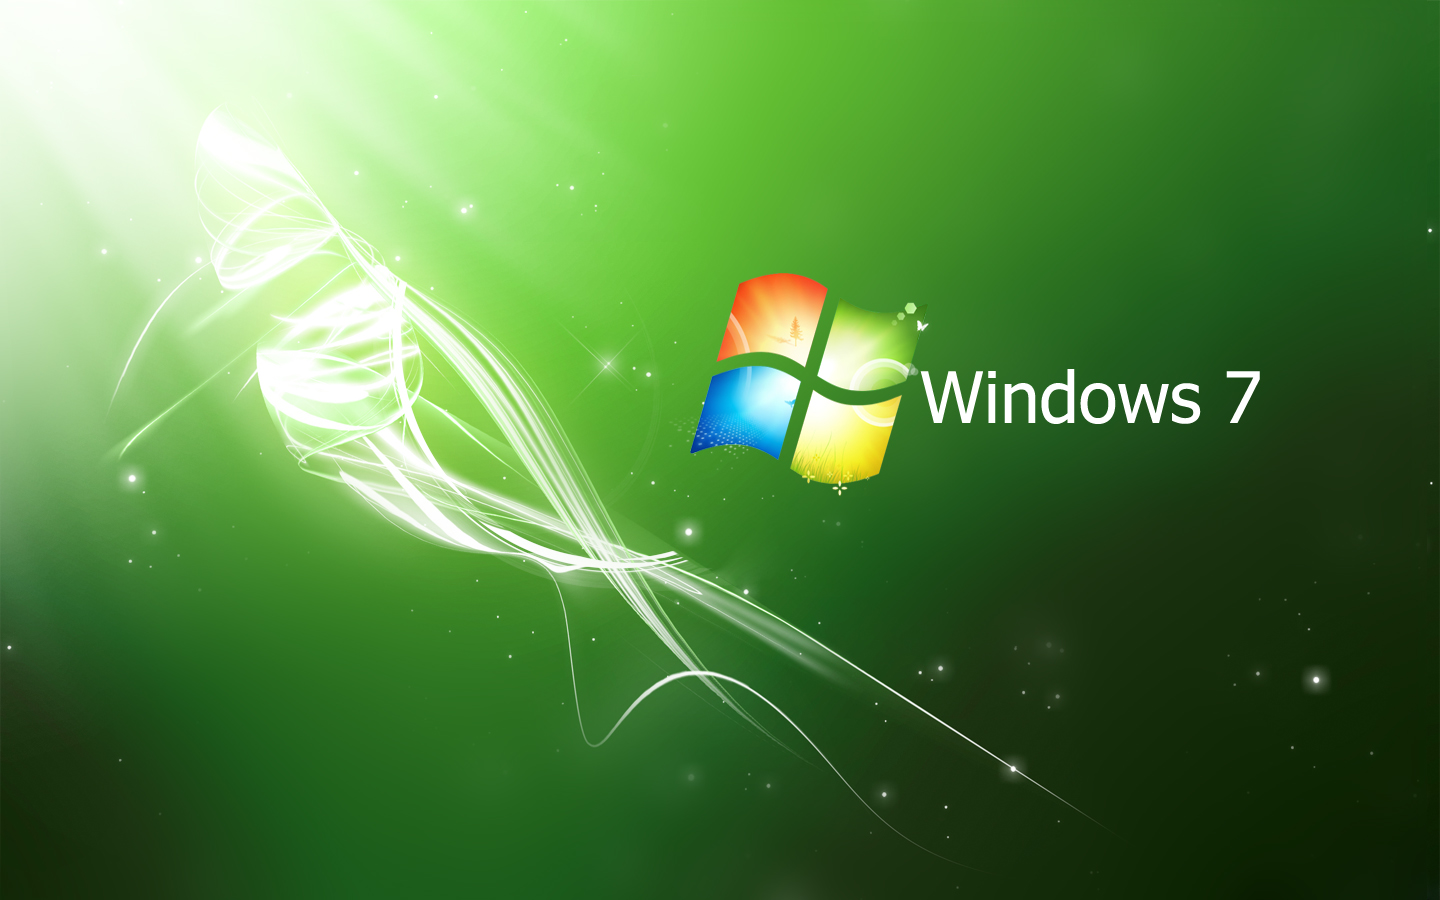 Màu xanh lá cây luôn là một màu sắc mang đến sự tươi mới và sự sống động. Cùng với đó, Windows 7 còn mang đến cho bạn những hình ảnh nền xanh lá cây tuyệt đẹp giúp cho màn hình Desktop của bạn trở nên thật sự đặc biệt. Hãy khám phá những tinh túy về sự phát triển, tươi mới và sự sống động với những bức ảnh này ngay hôm nay!